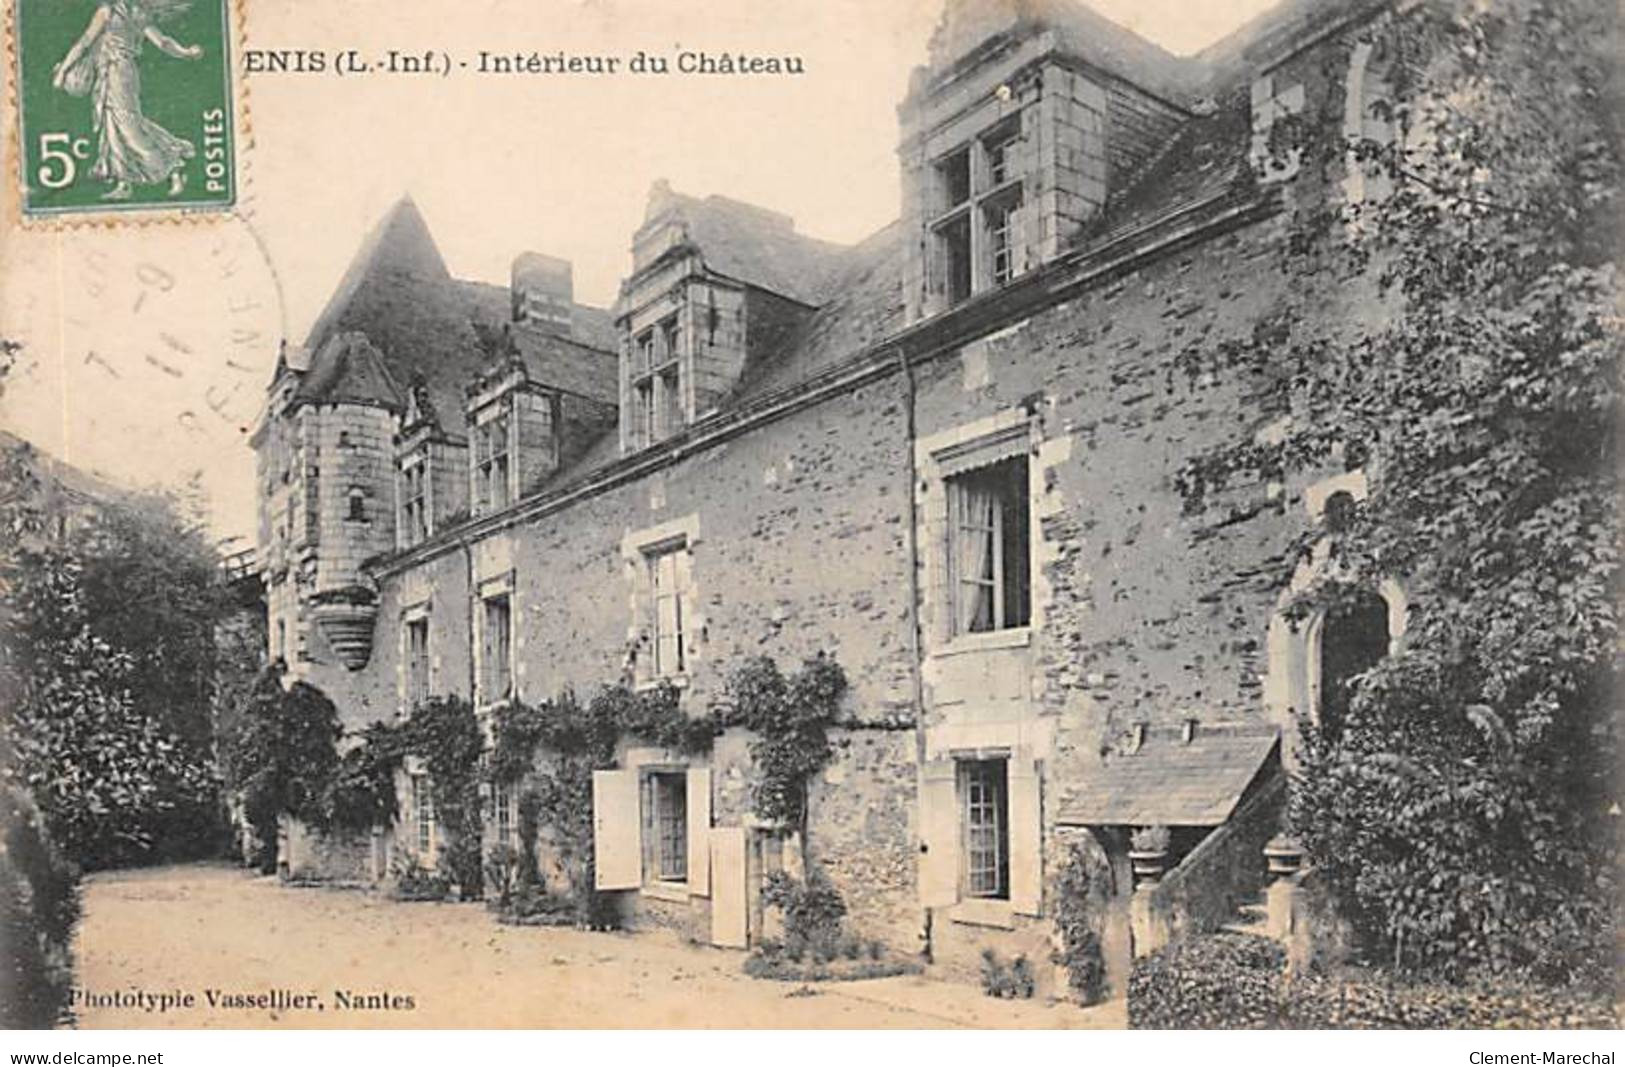 ANCENIS - Intérieur Du Château - Très Bon état - Ancenis